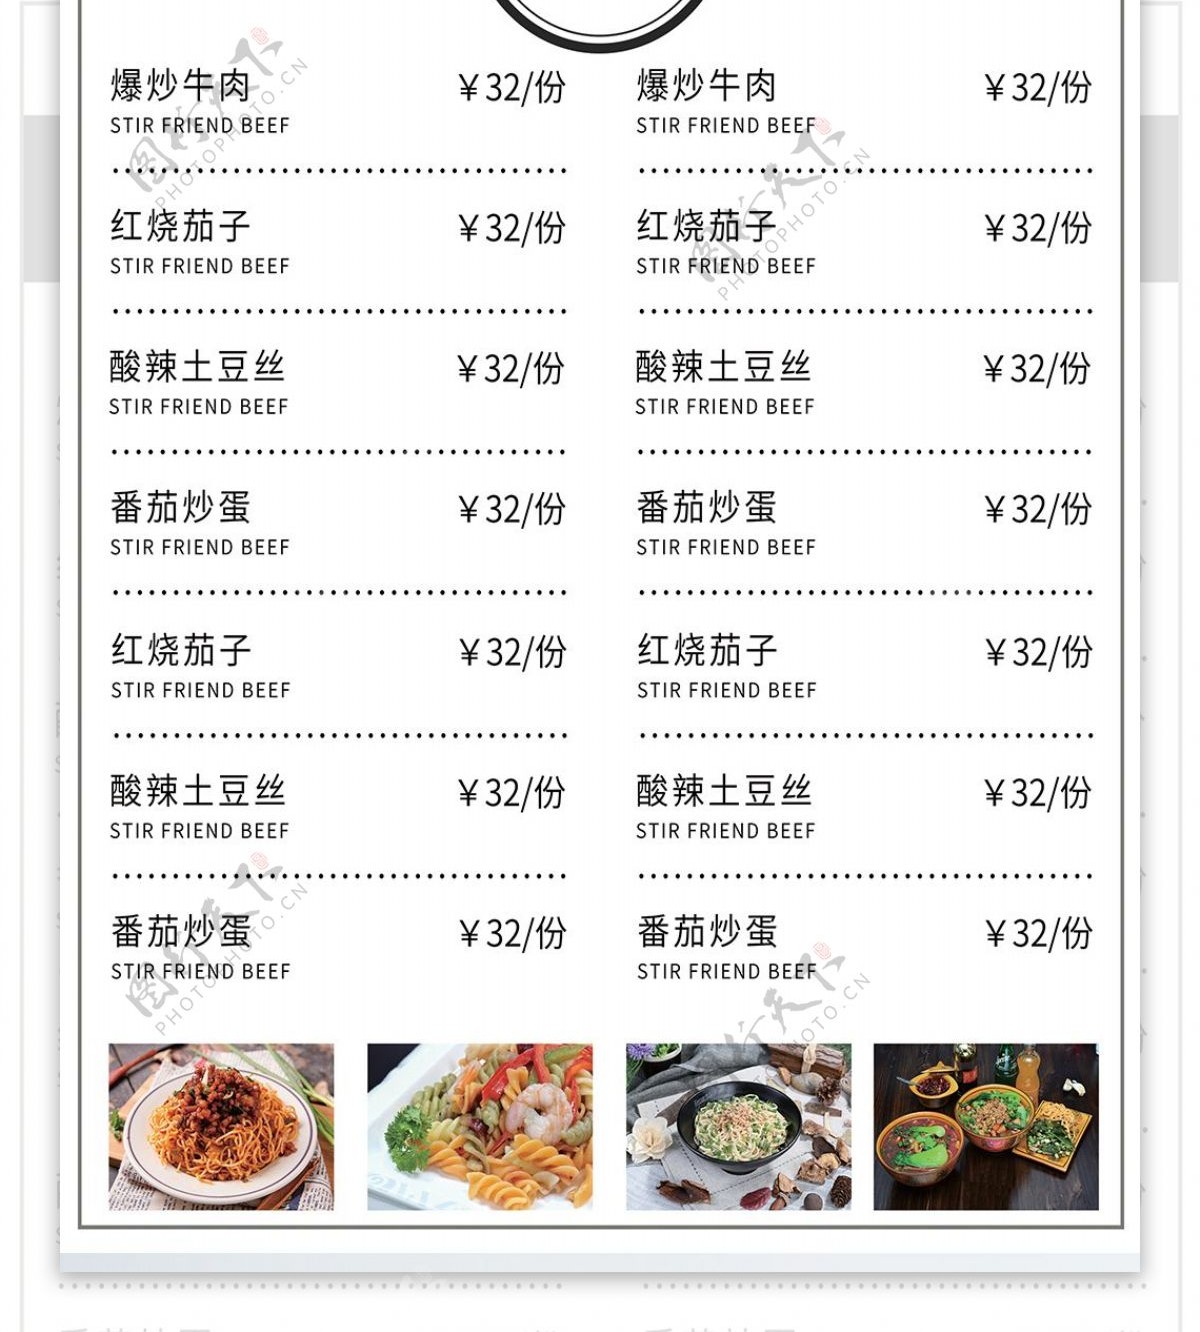 水墨中国风面馆菜单菜谱